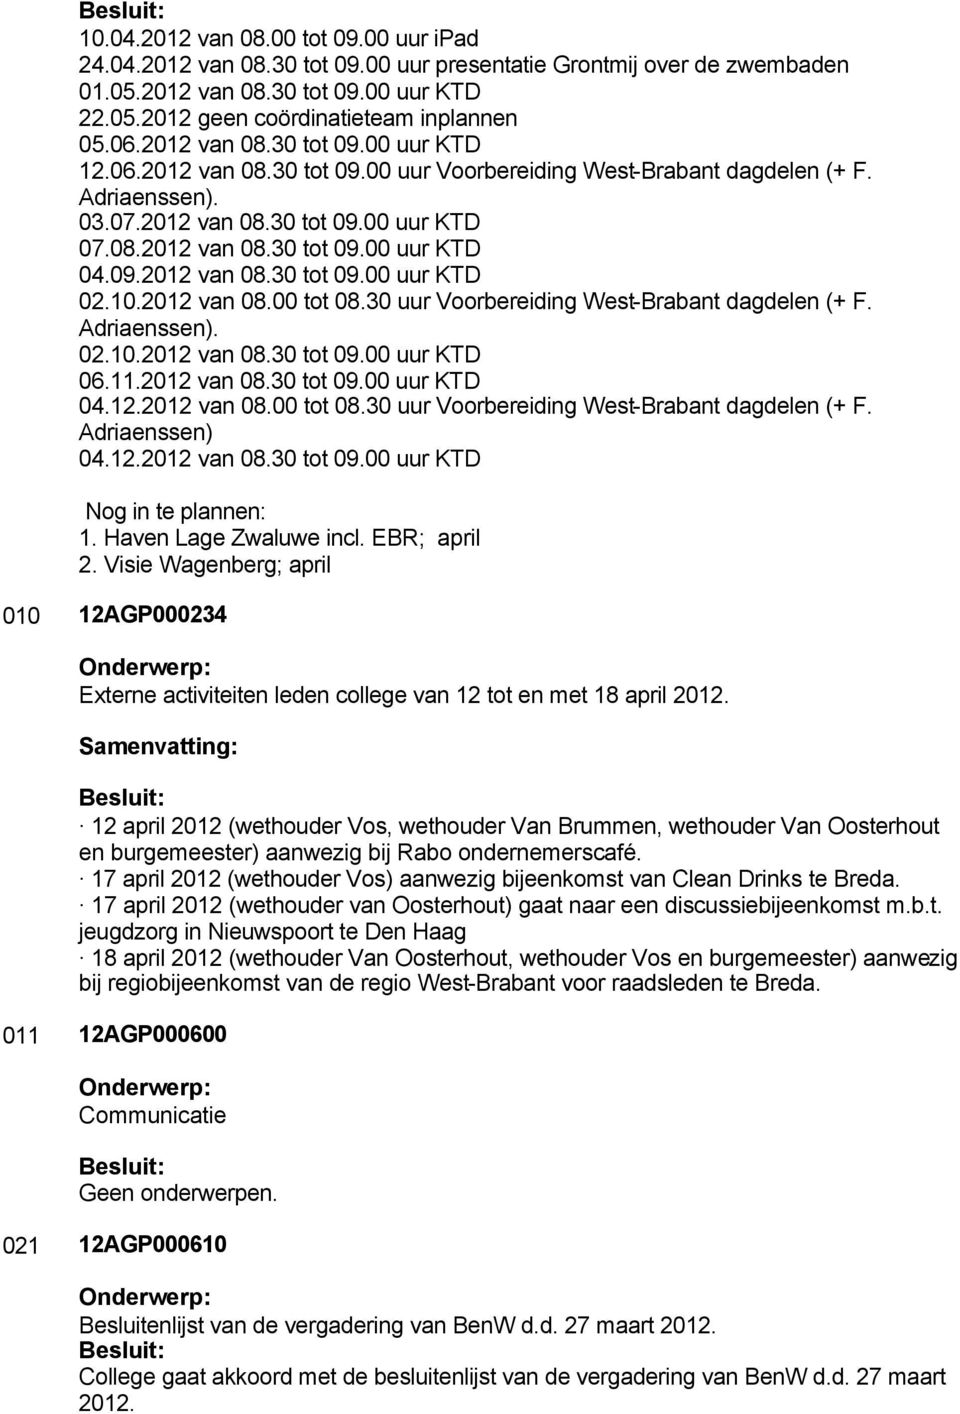 09.2012 van 08.30 tot 09.00 uur KTD 02.10.2012 van 08.00 tot 08.30 uur Voorbereiding West-Brabant dagdelen (+ F. Adriaenssen). 02.10.2012 van 08.30 tot 09.00 uur KTD 06.11.2012 van 08.30 tot 09.00 uur KTD 04.